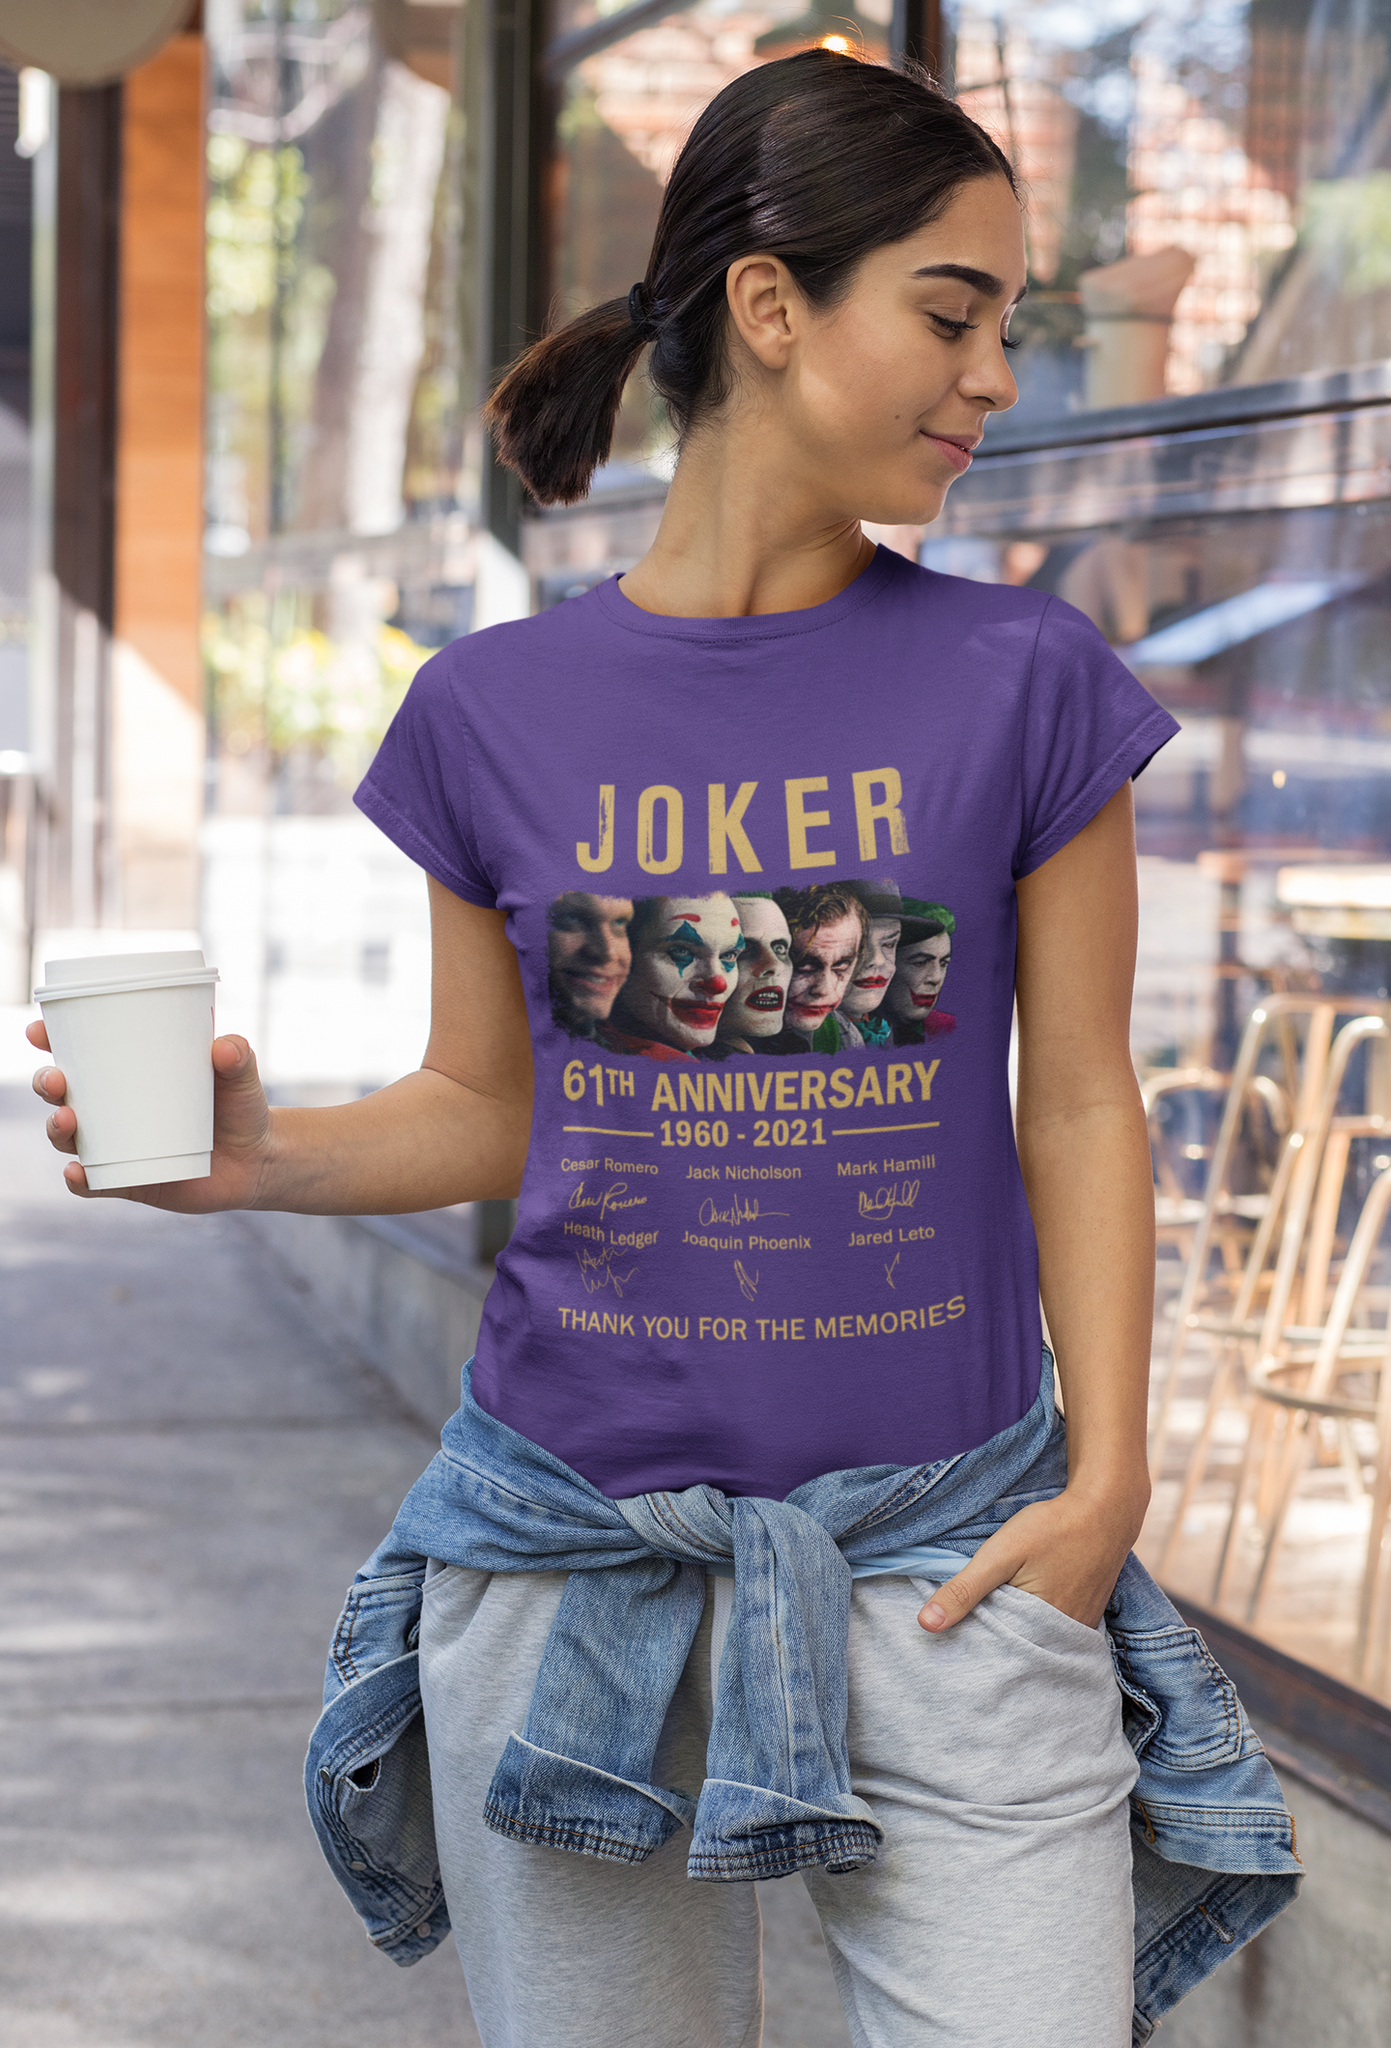 Joker T Shirt, Jokers The Maniac Comedian Psychopath Anarchist Clown Gangster Tshirt, Joker 61th Anniversary Shirt, Halloween Gifts